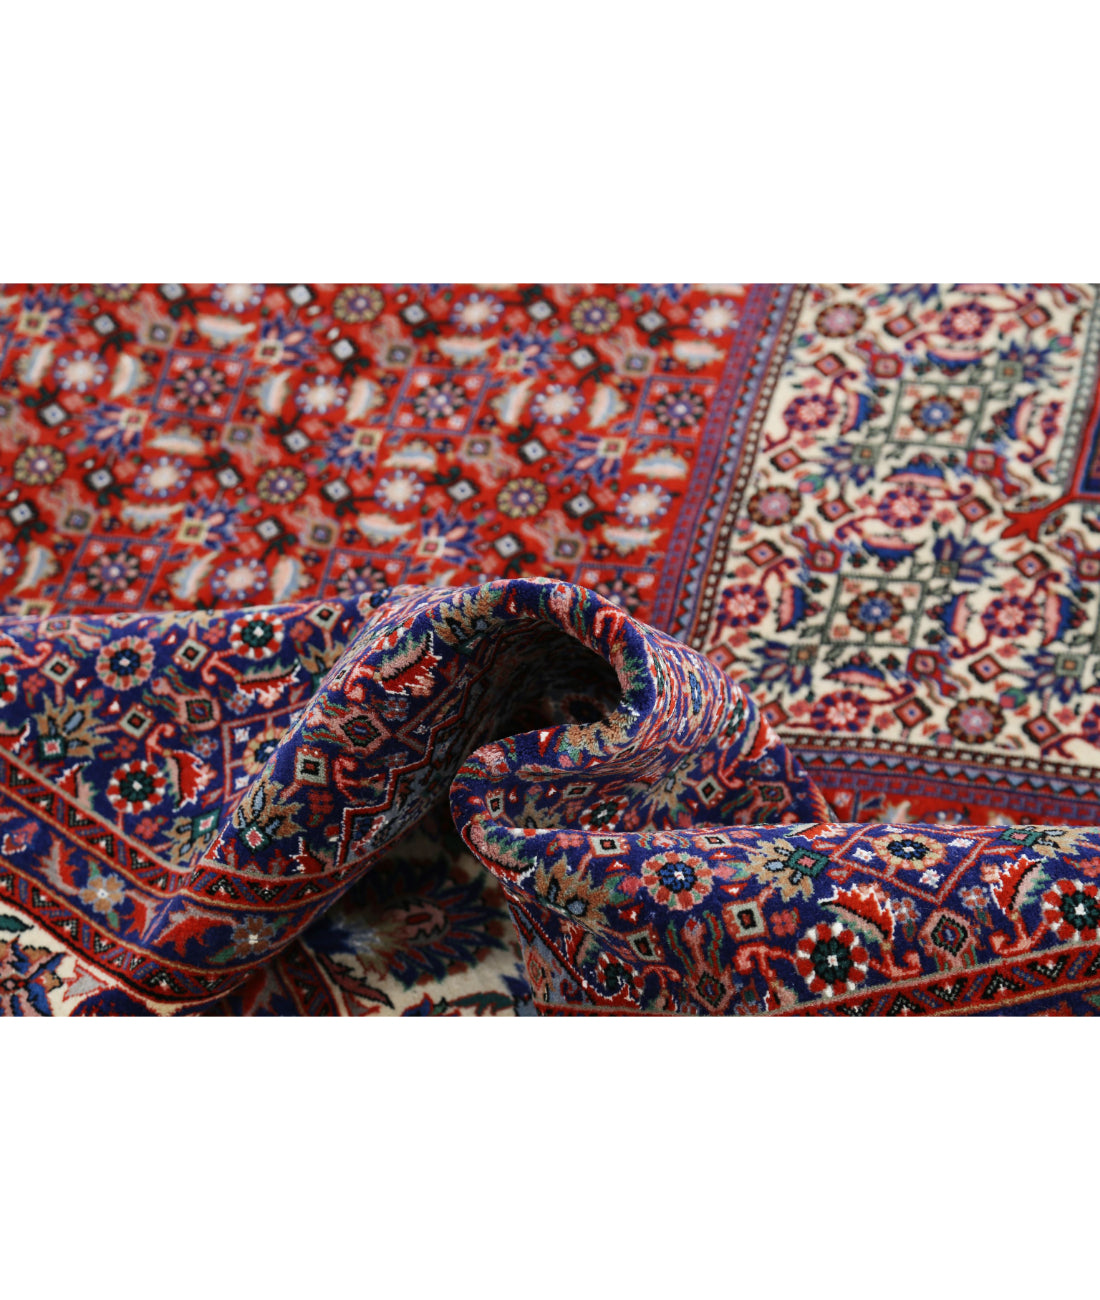 Hand Knotted Persian Bijar Wool & Silk Rug - 6'7'' x 10'0'' 6'7'' x 10'0'' (198 X 300) / Red / Ivory